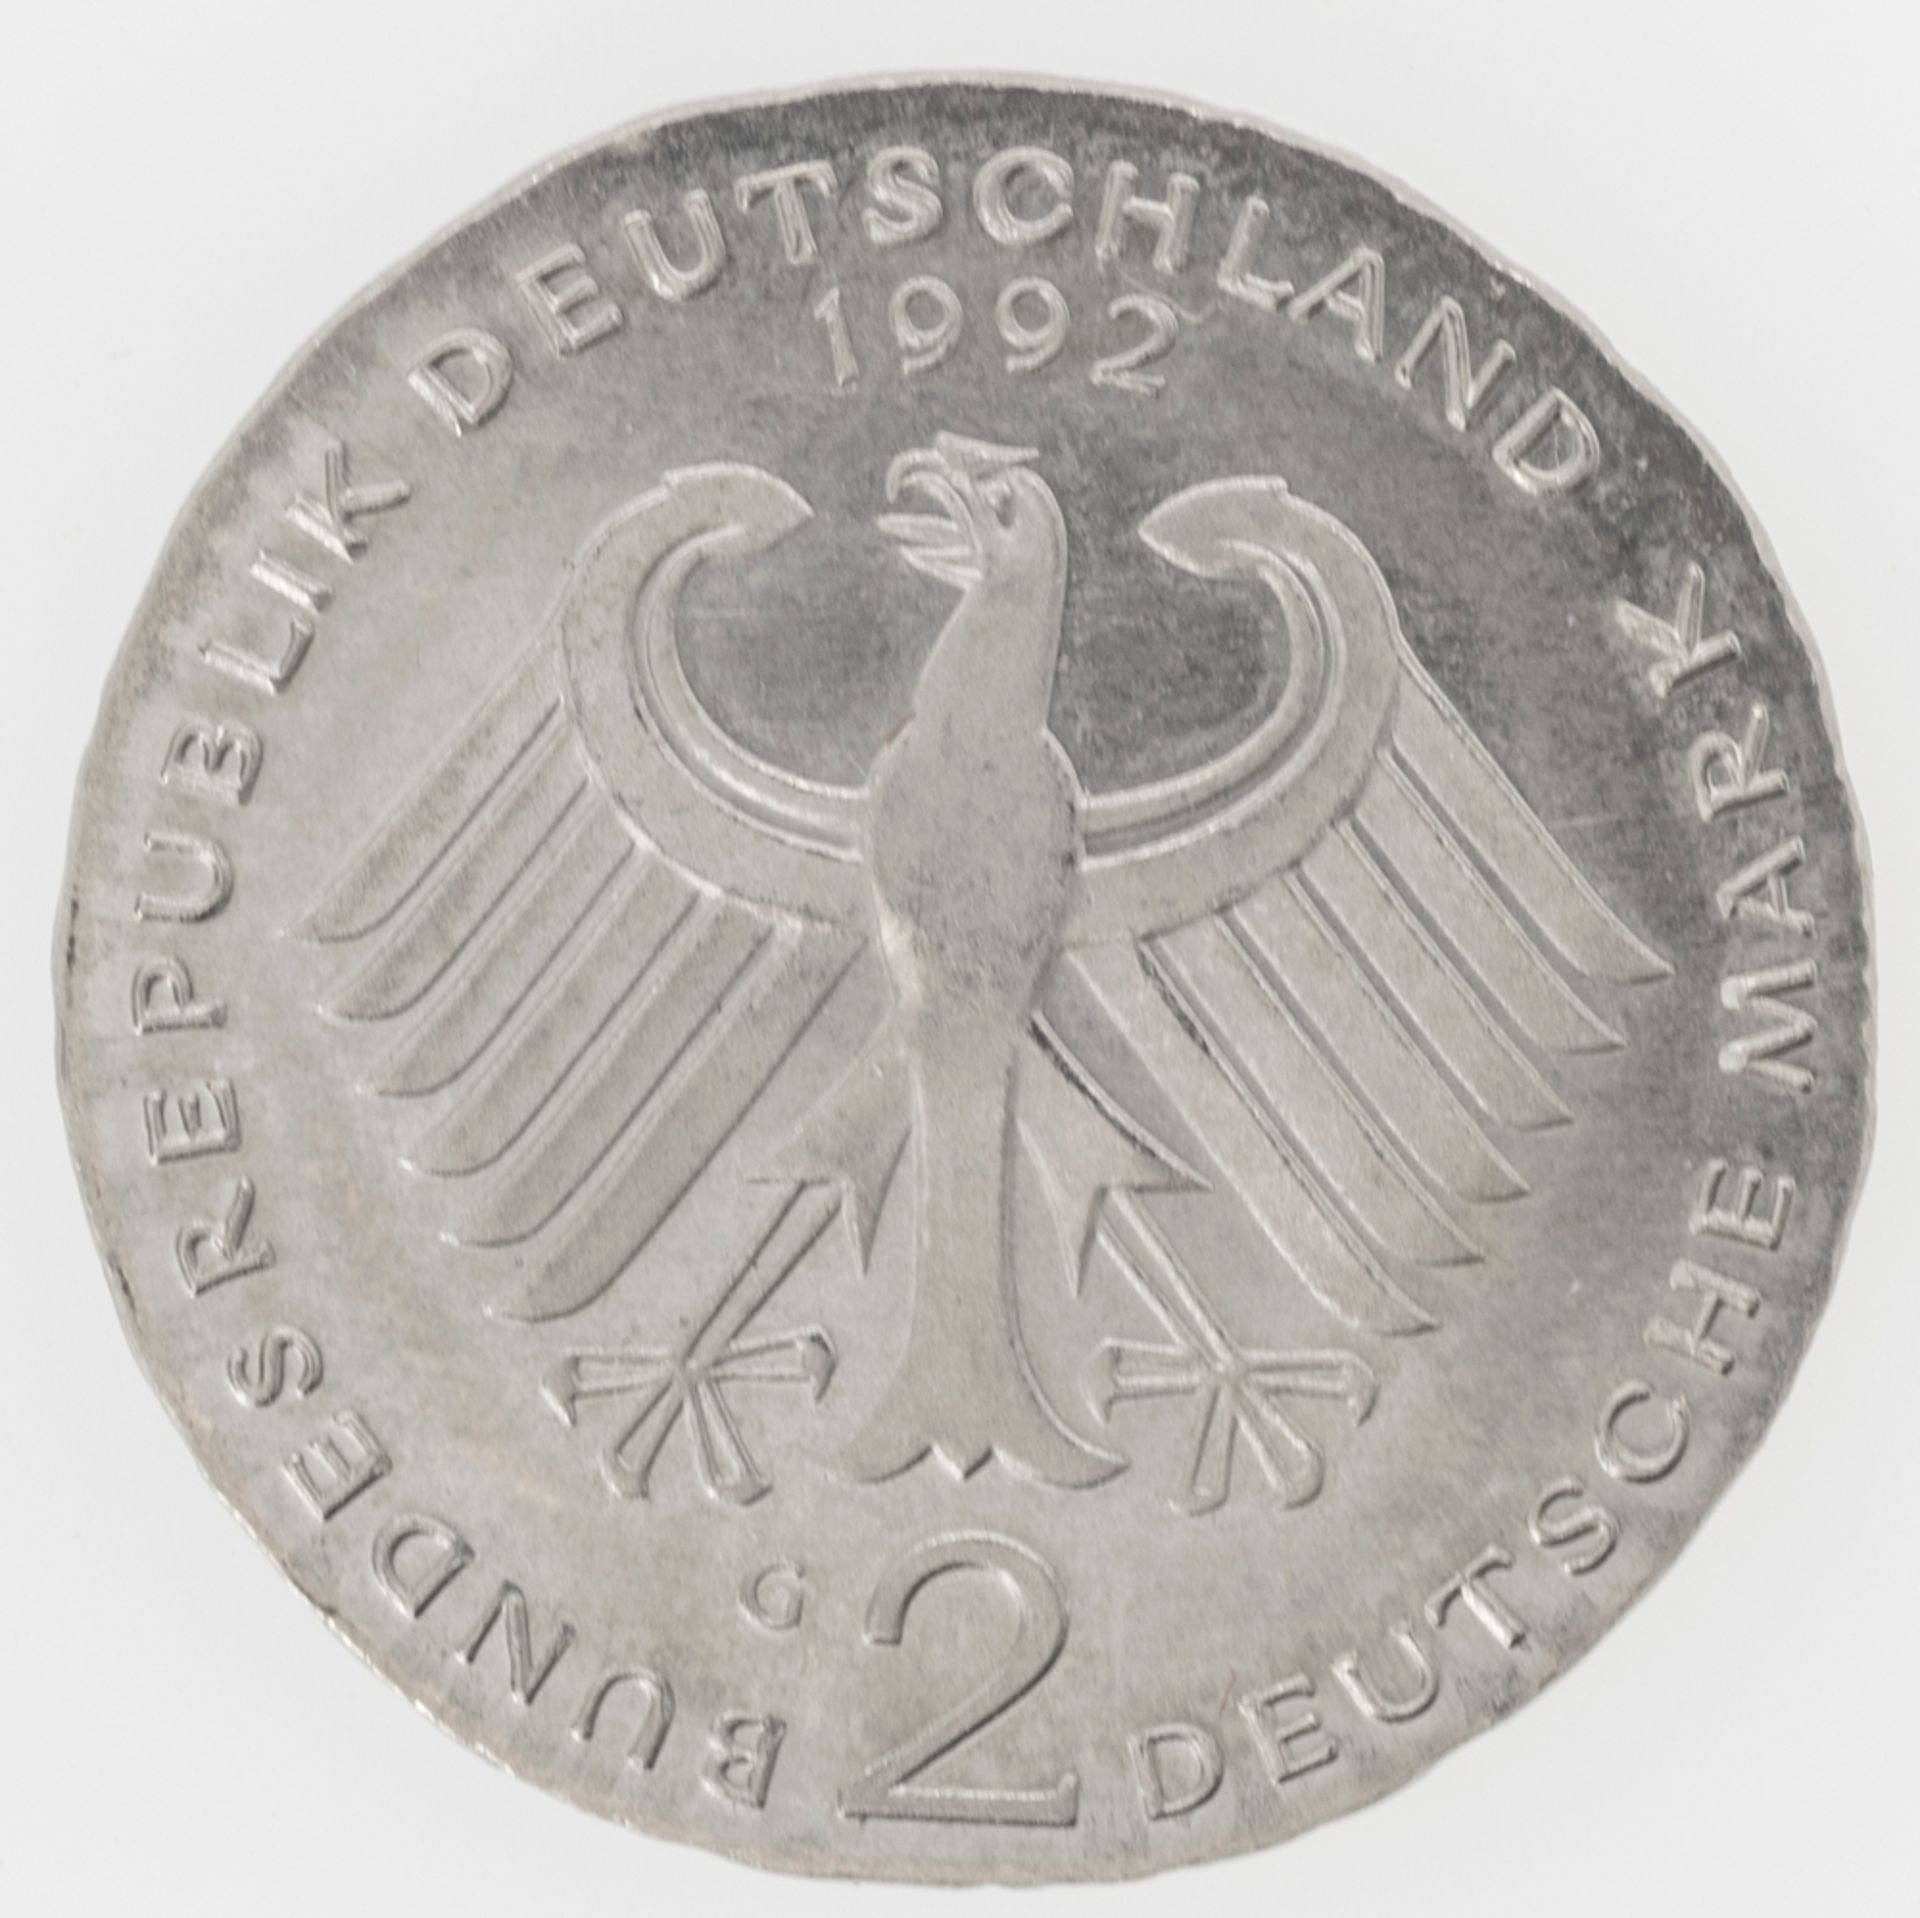 BRD 1988, 2.- DM - Münze, Fehlprägung: Schrötling zu dünn und zu klein (ohne Rand). - Image 2 of 2